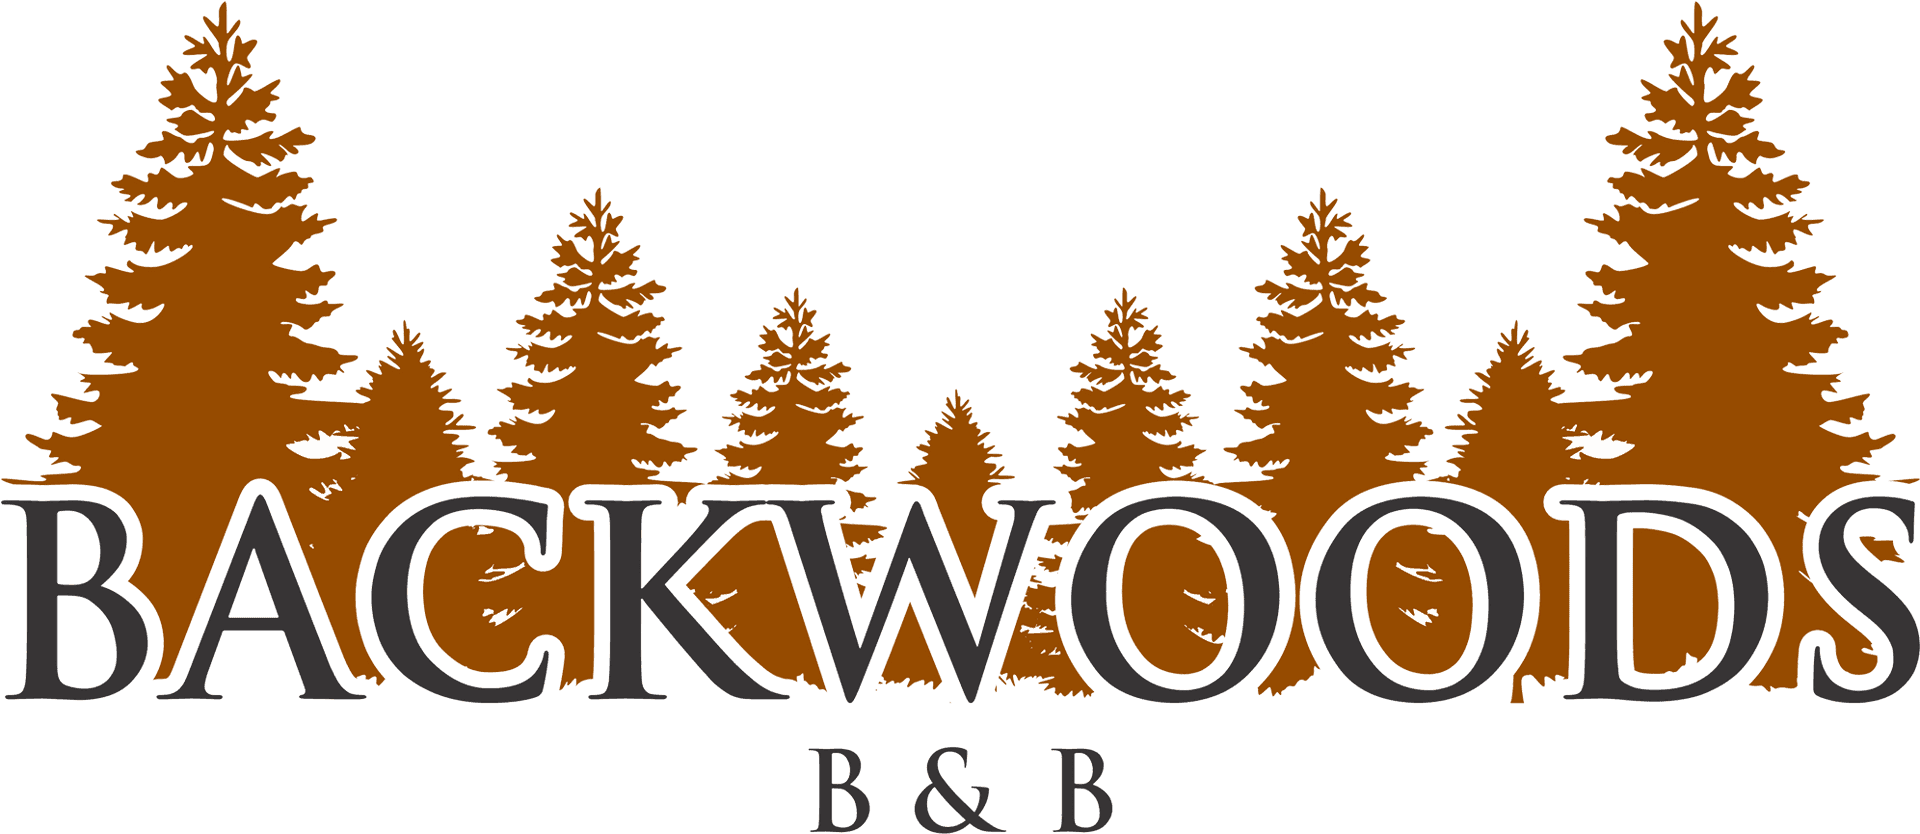 Backwoods Bn B Logo PNG image